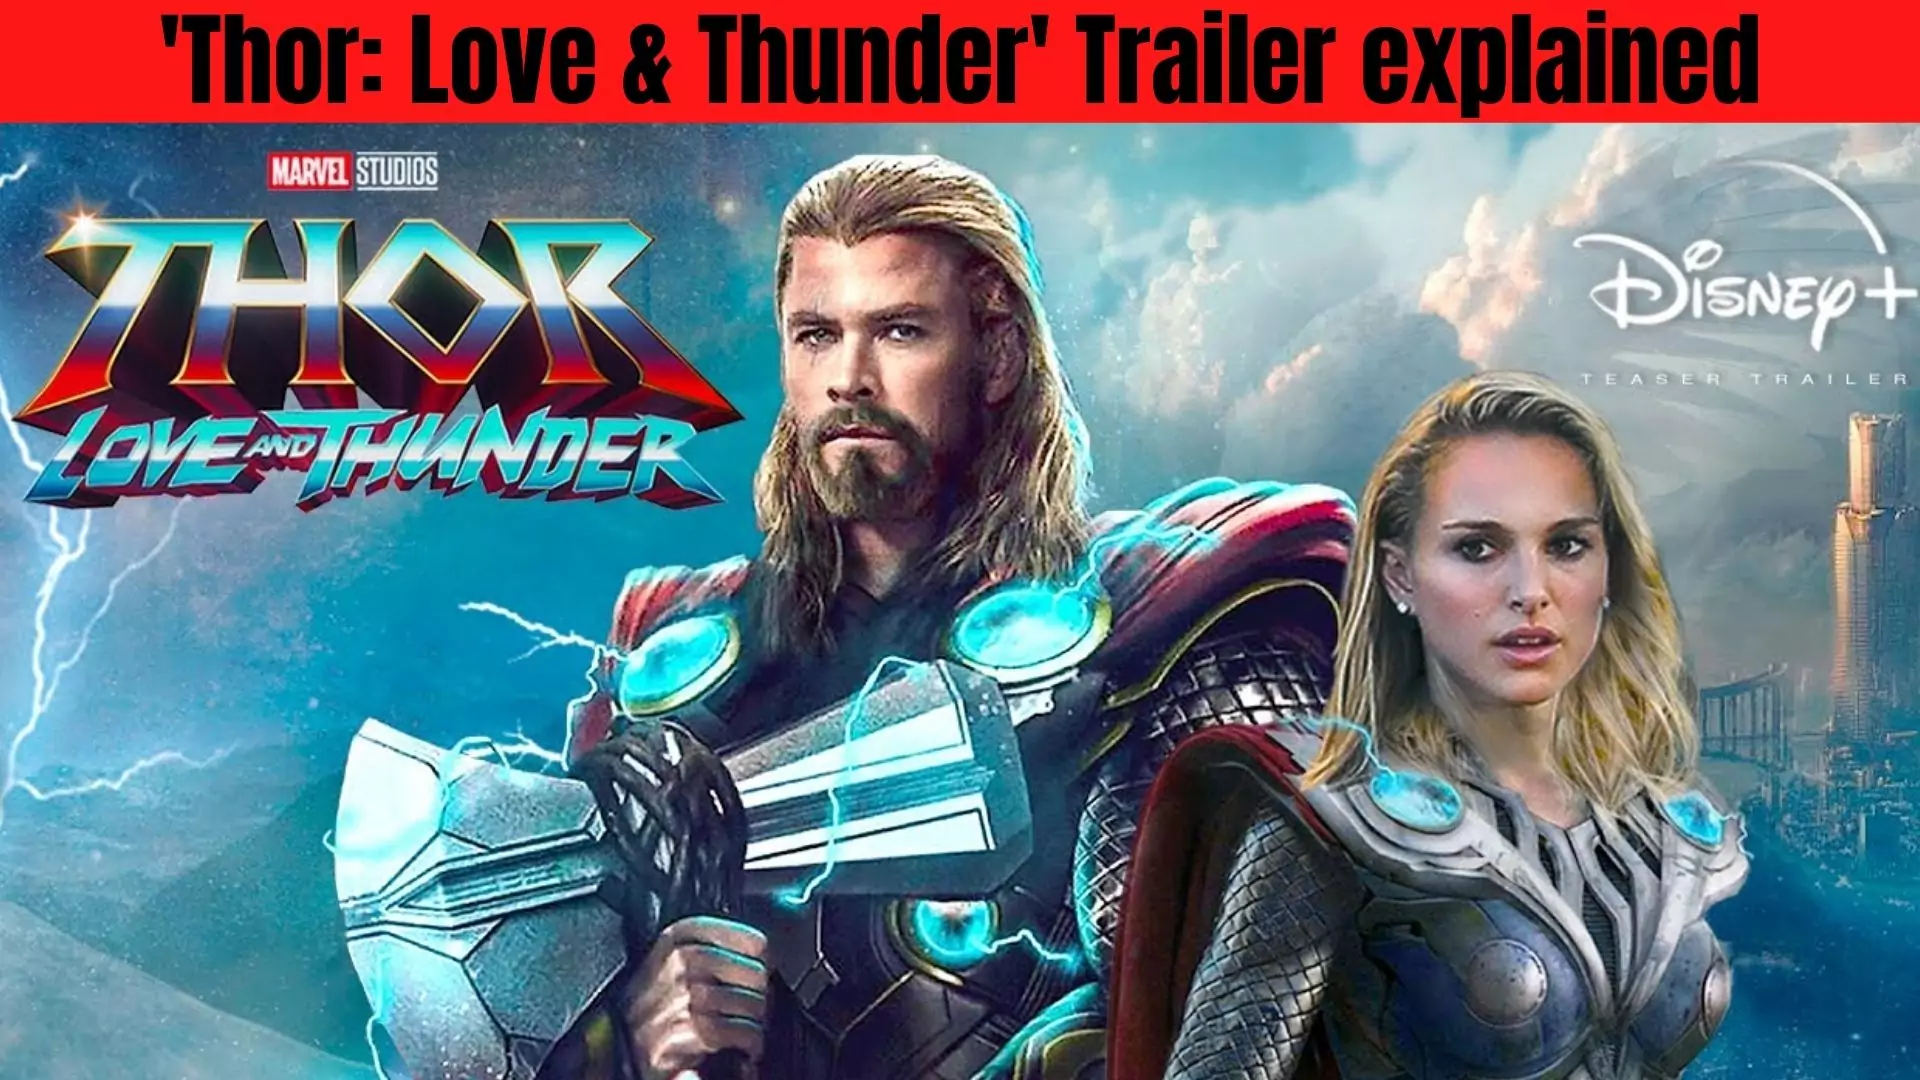 'Thor: Love & Thunder' Trailer explained